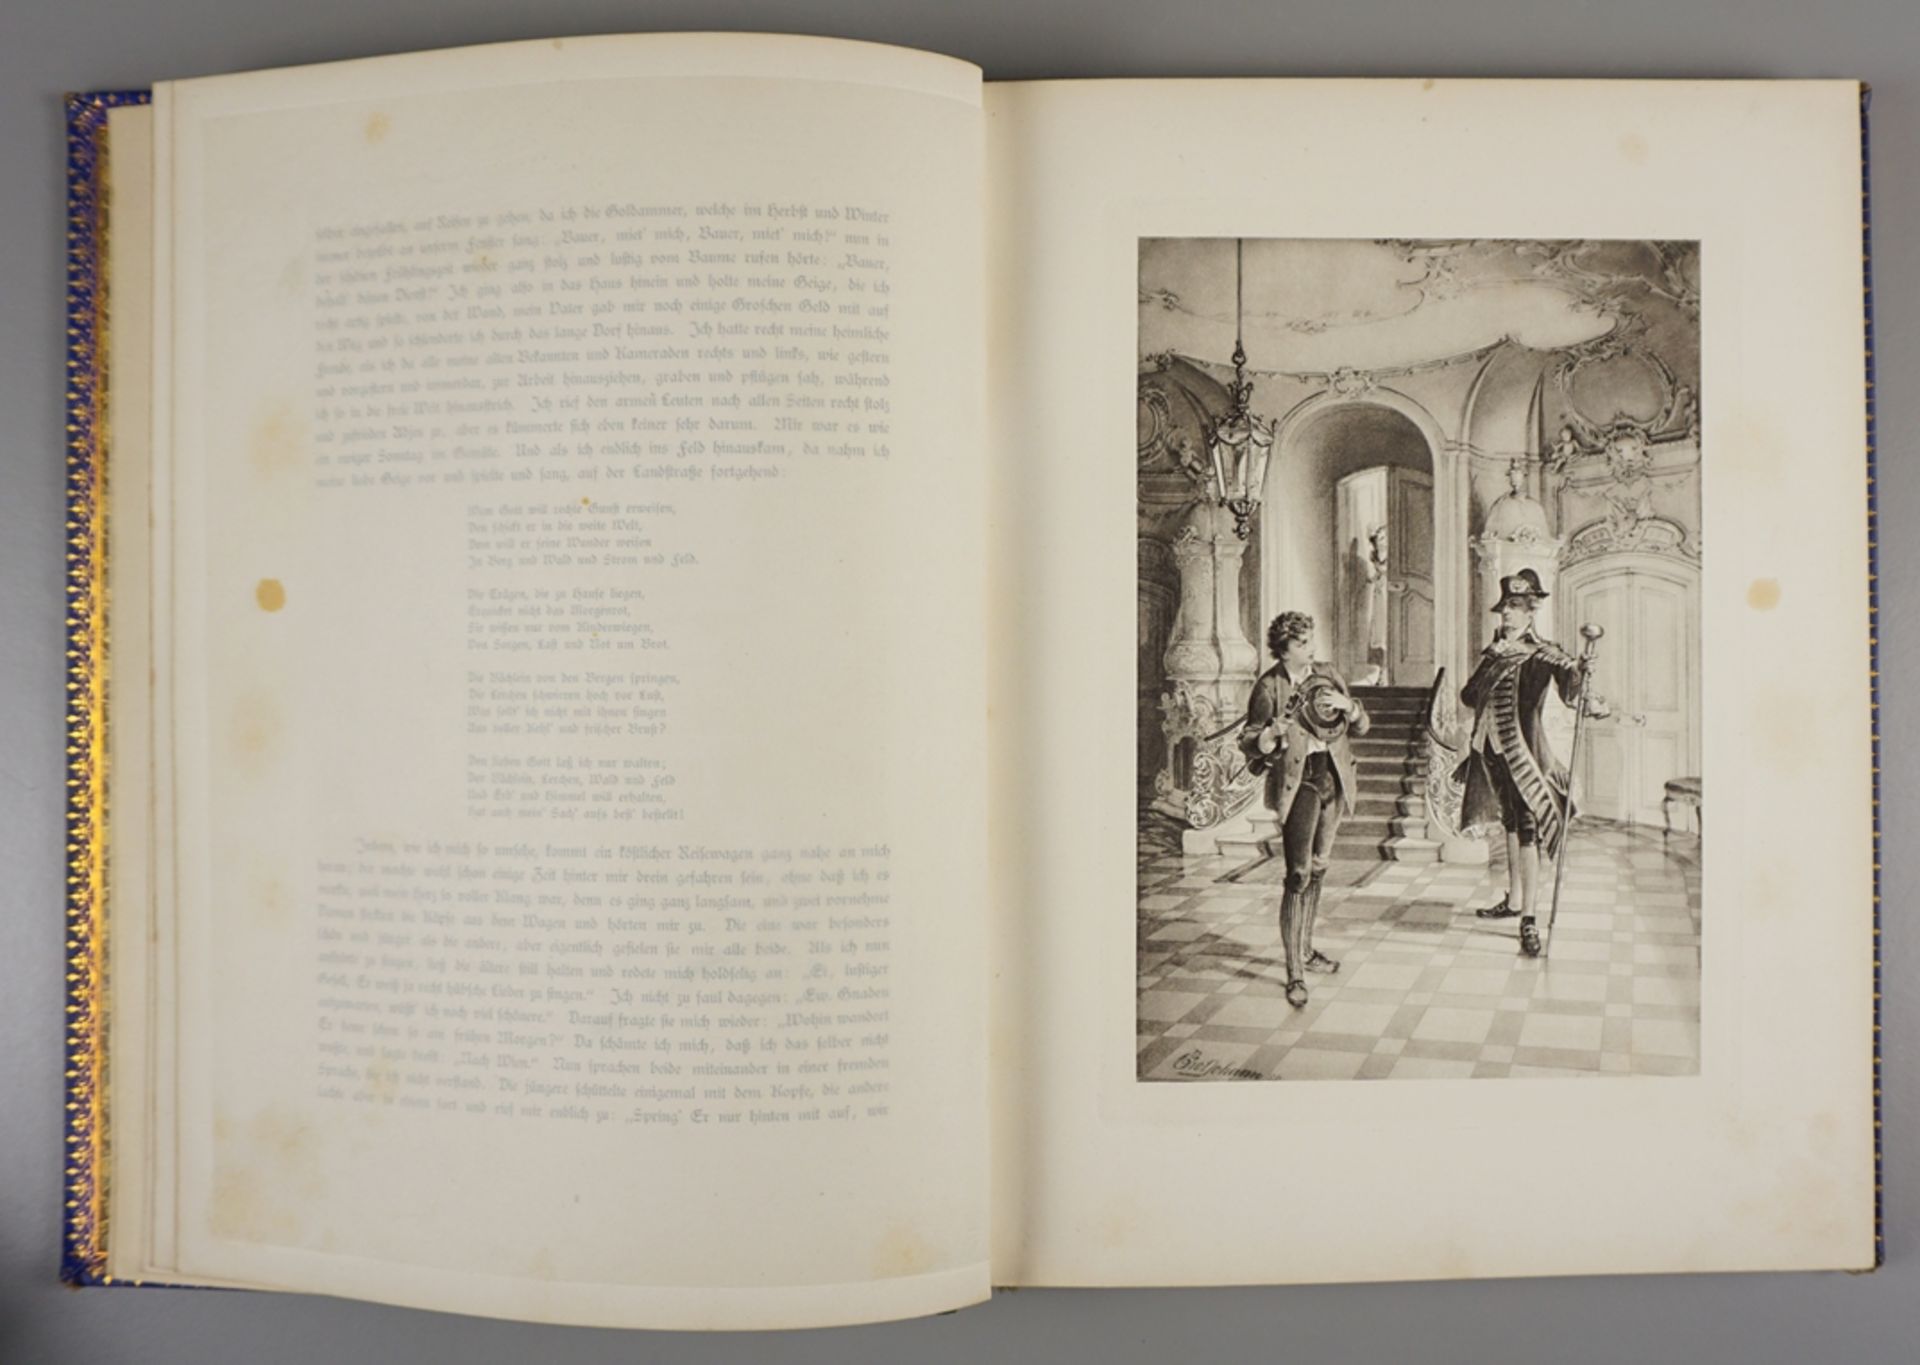 Aus dem Leben eines Taugenichts, Novelle von Joseph Freiherrn von Eichendorff, 1886 - Bild 2 aus 3